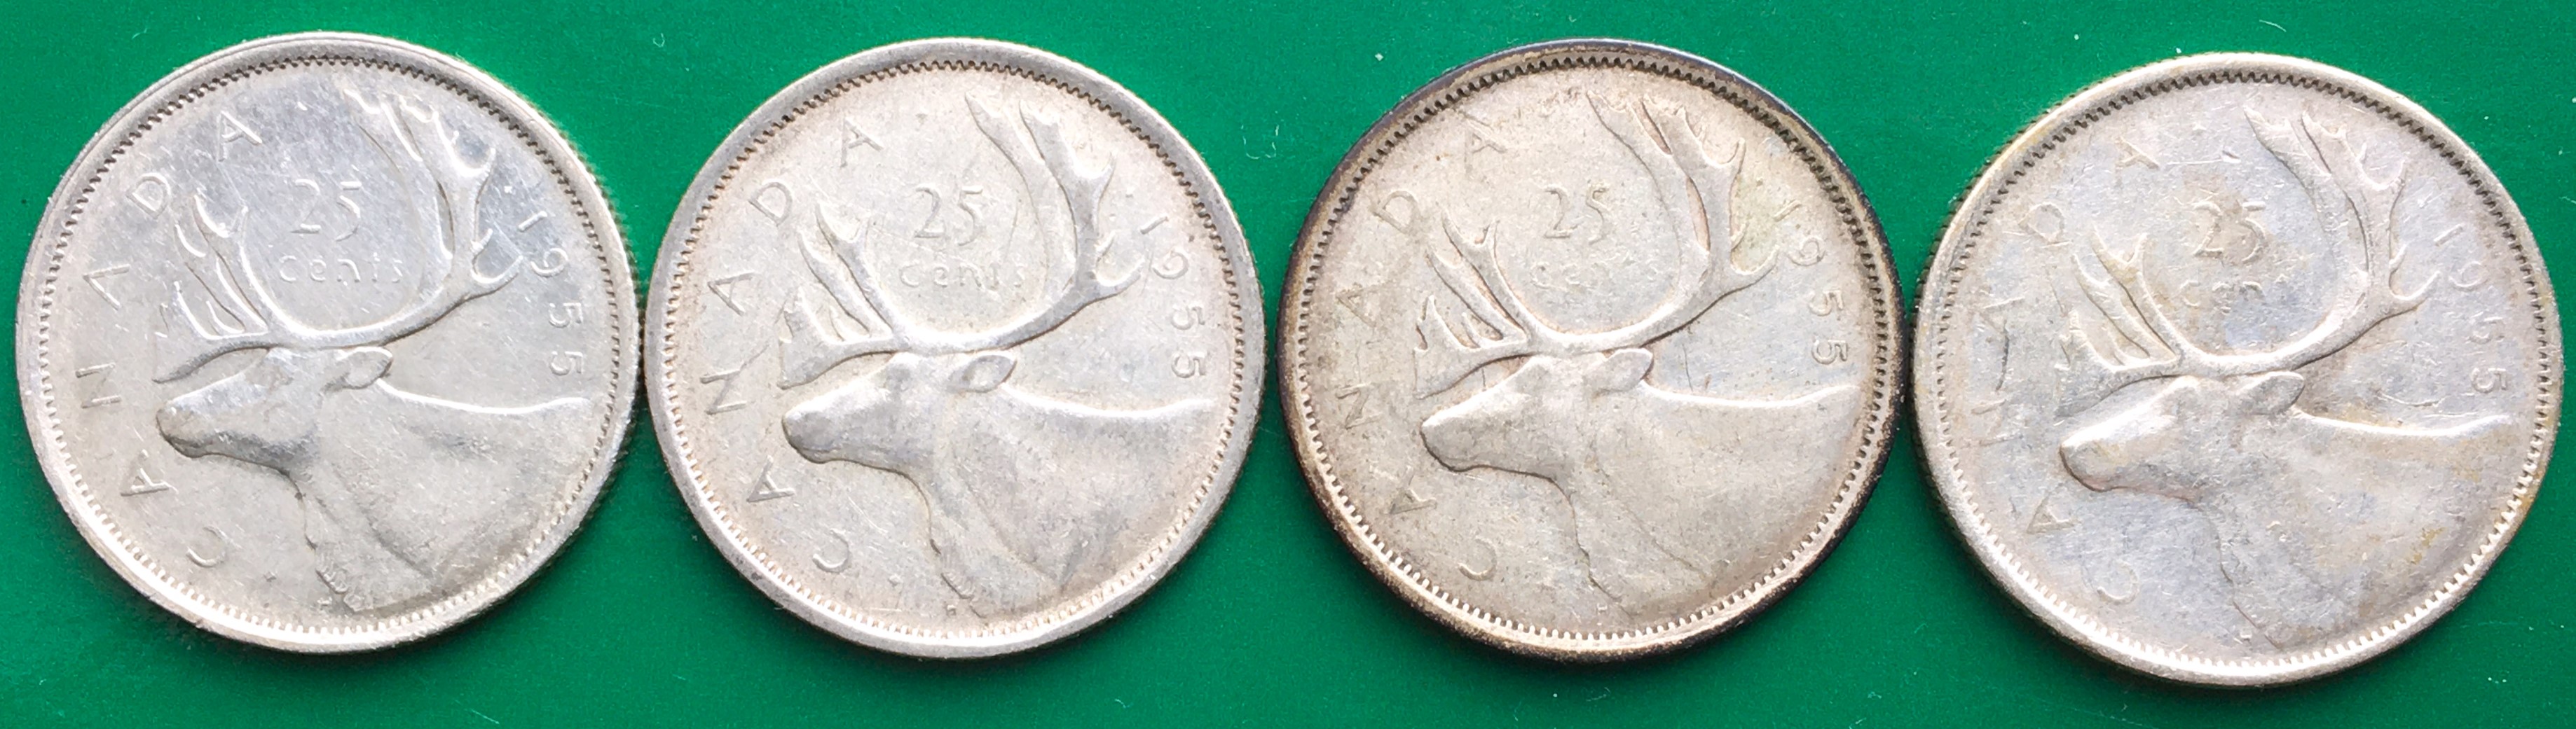 25 cents 1955 revers 4.JPG